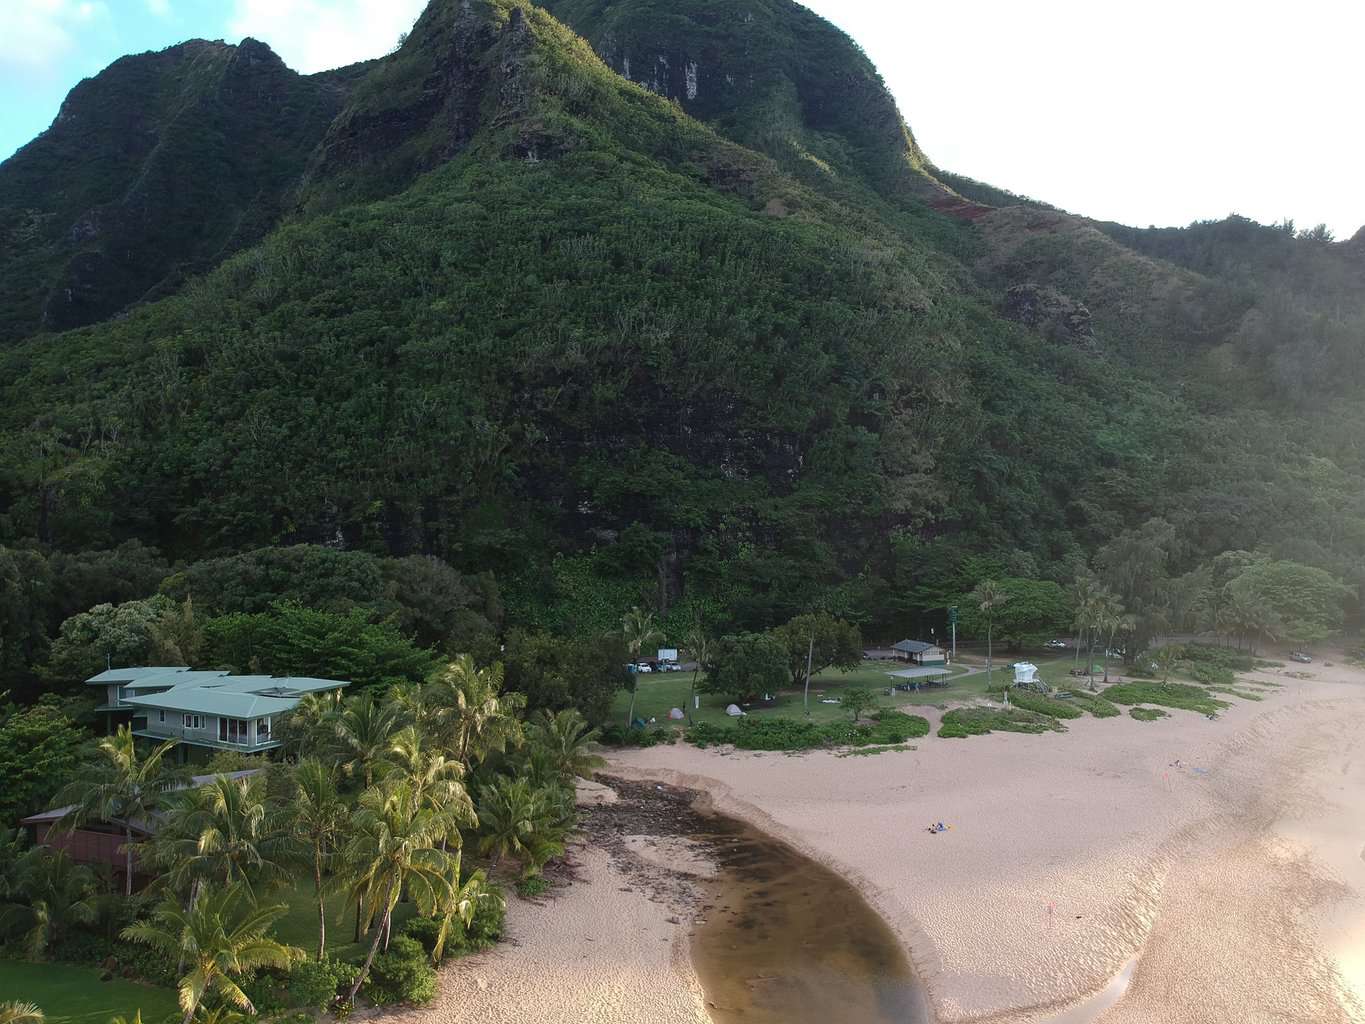 Kauai Drone Photo